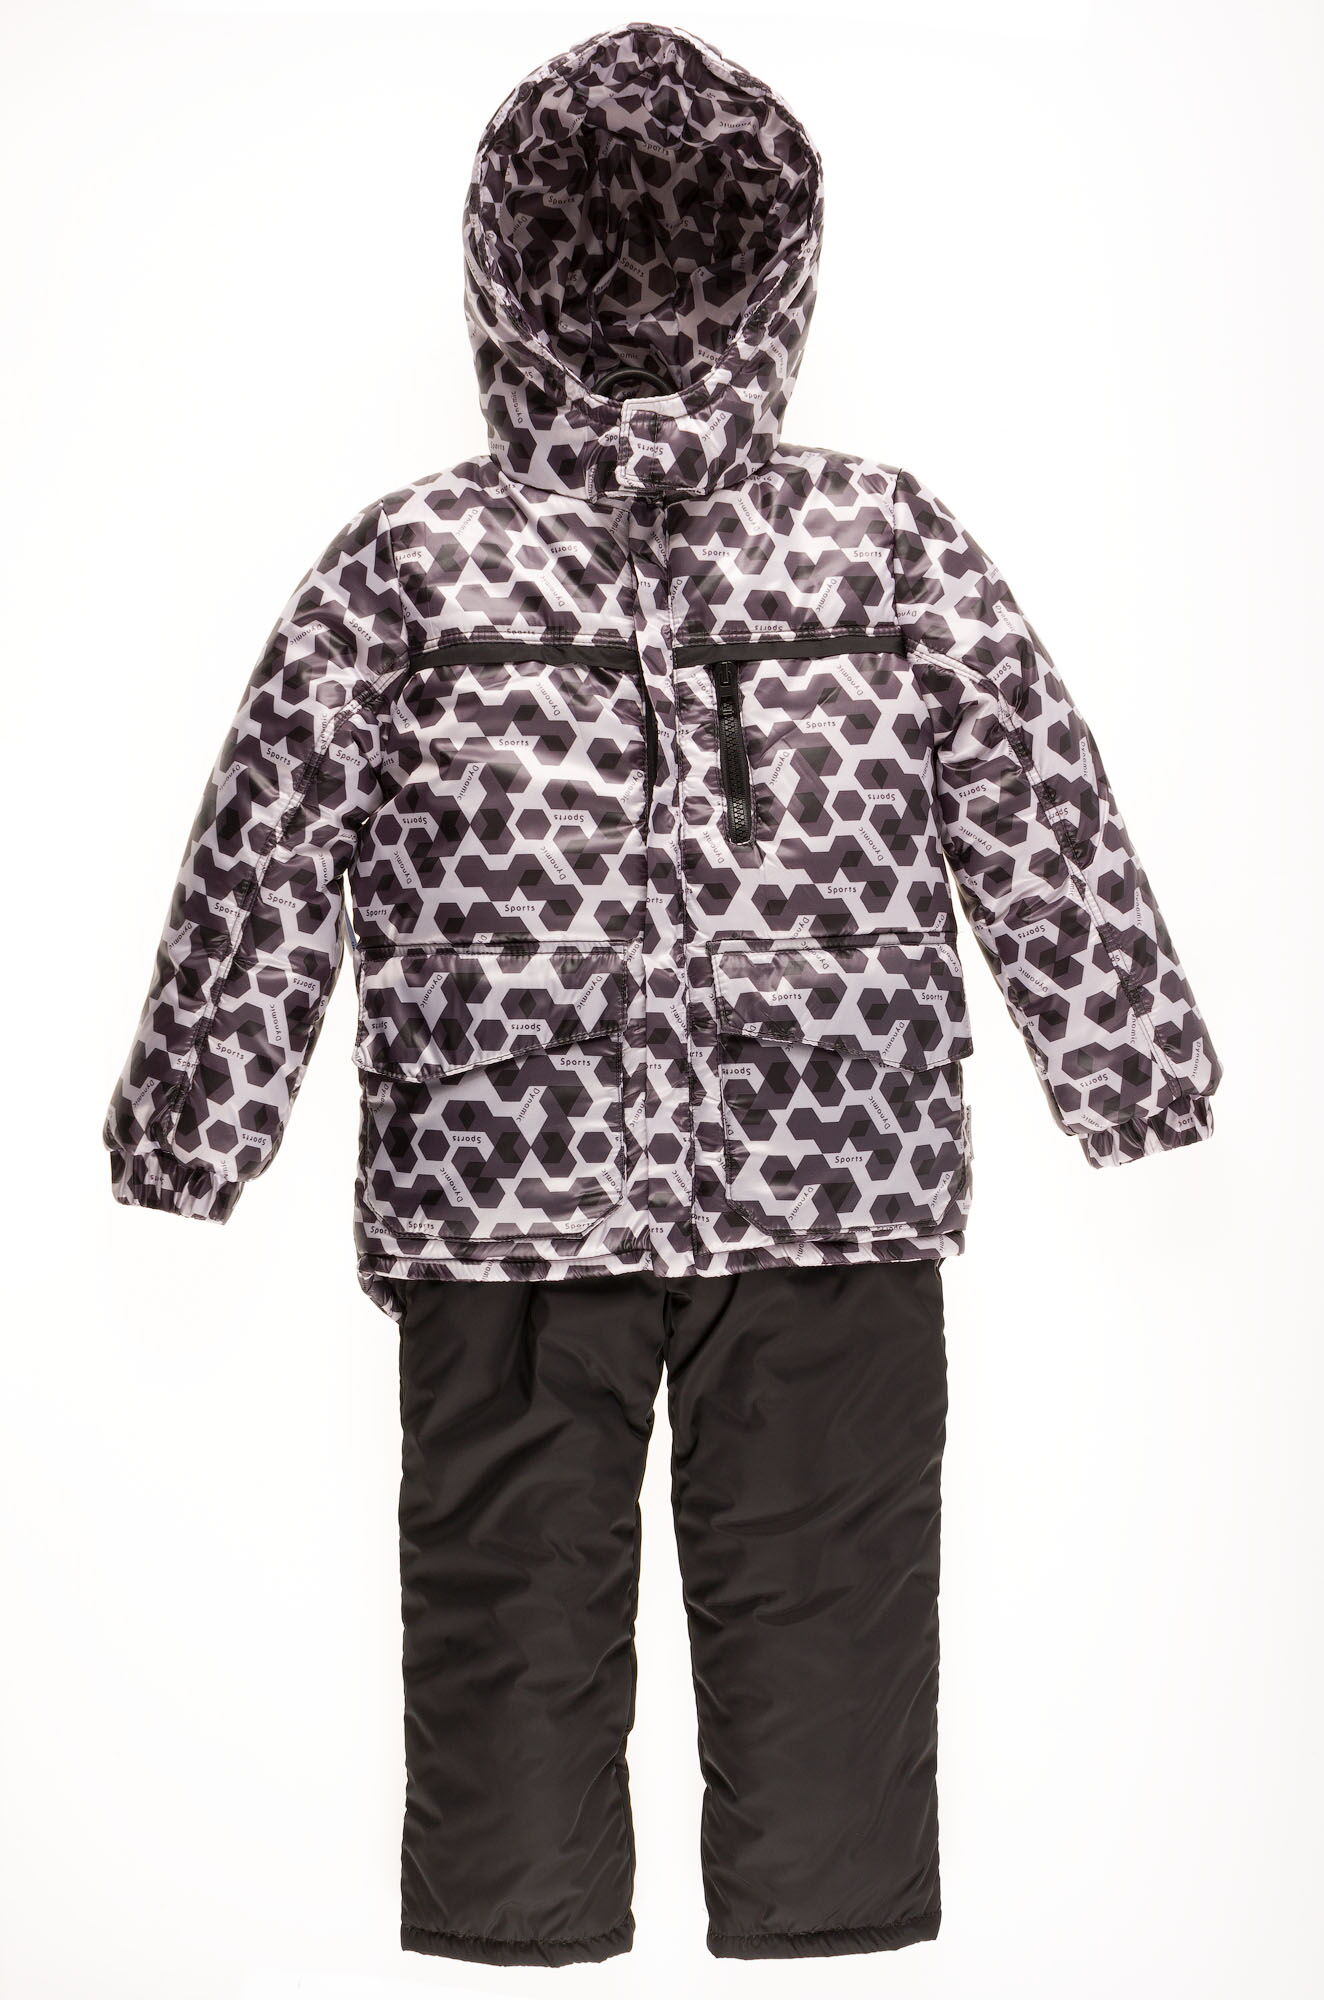 Комбинезон зимний раздельный для мальчика (куртка+штаны) Одягайко геометрия черный 20088+01241О - цена